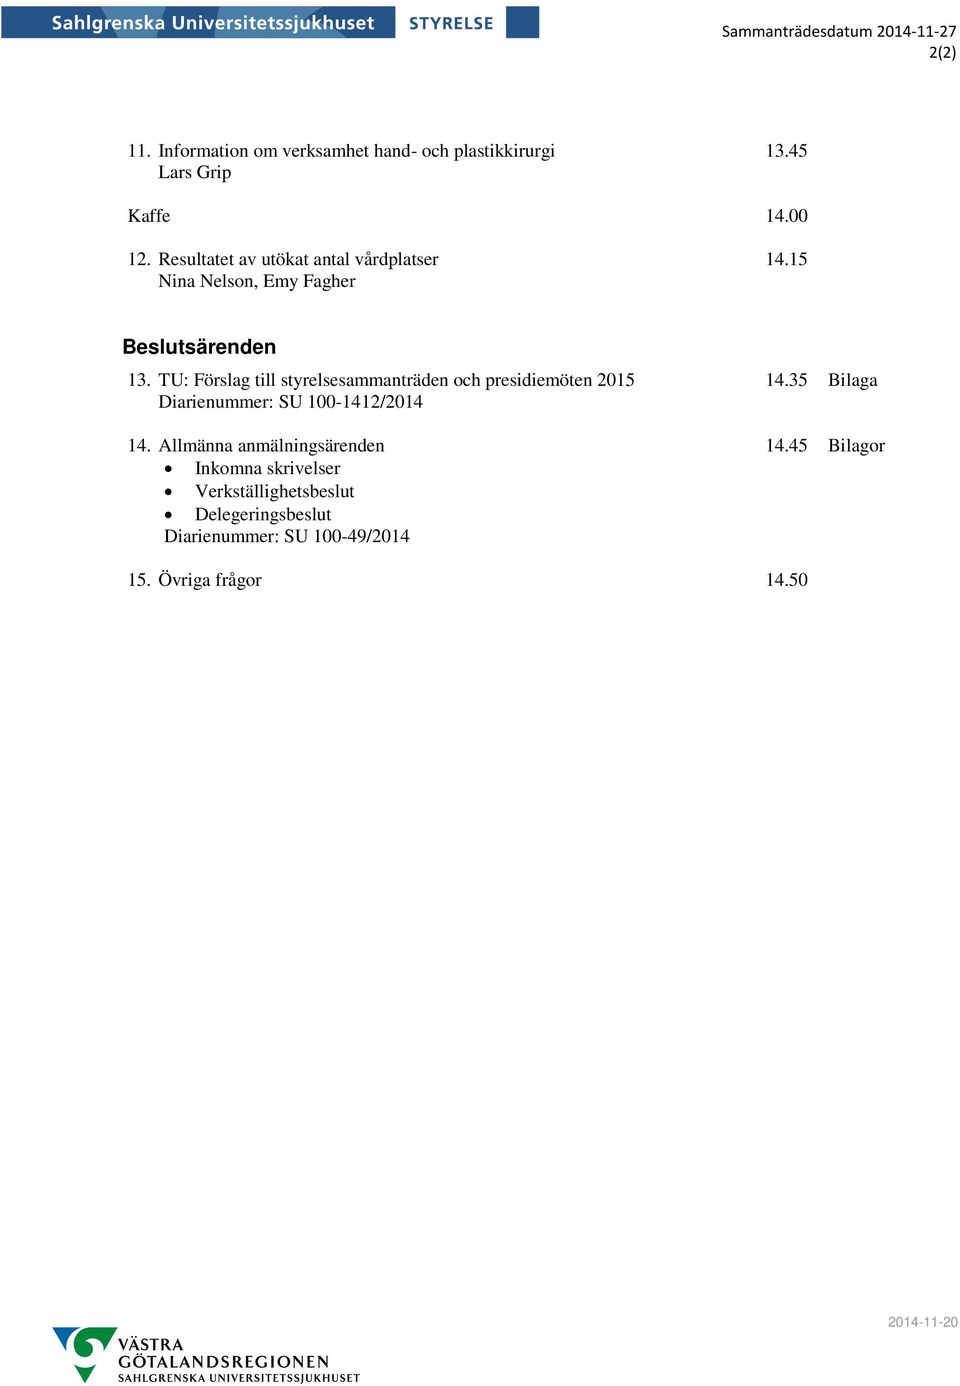 TU: Förslag till styrelsesammanträden och presidiemöten 2015 Diarienummer: SU 100-1412/2014 14.